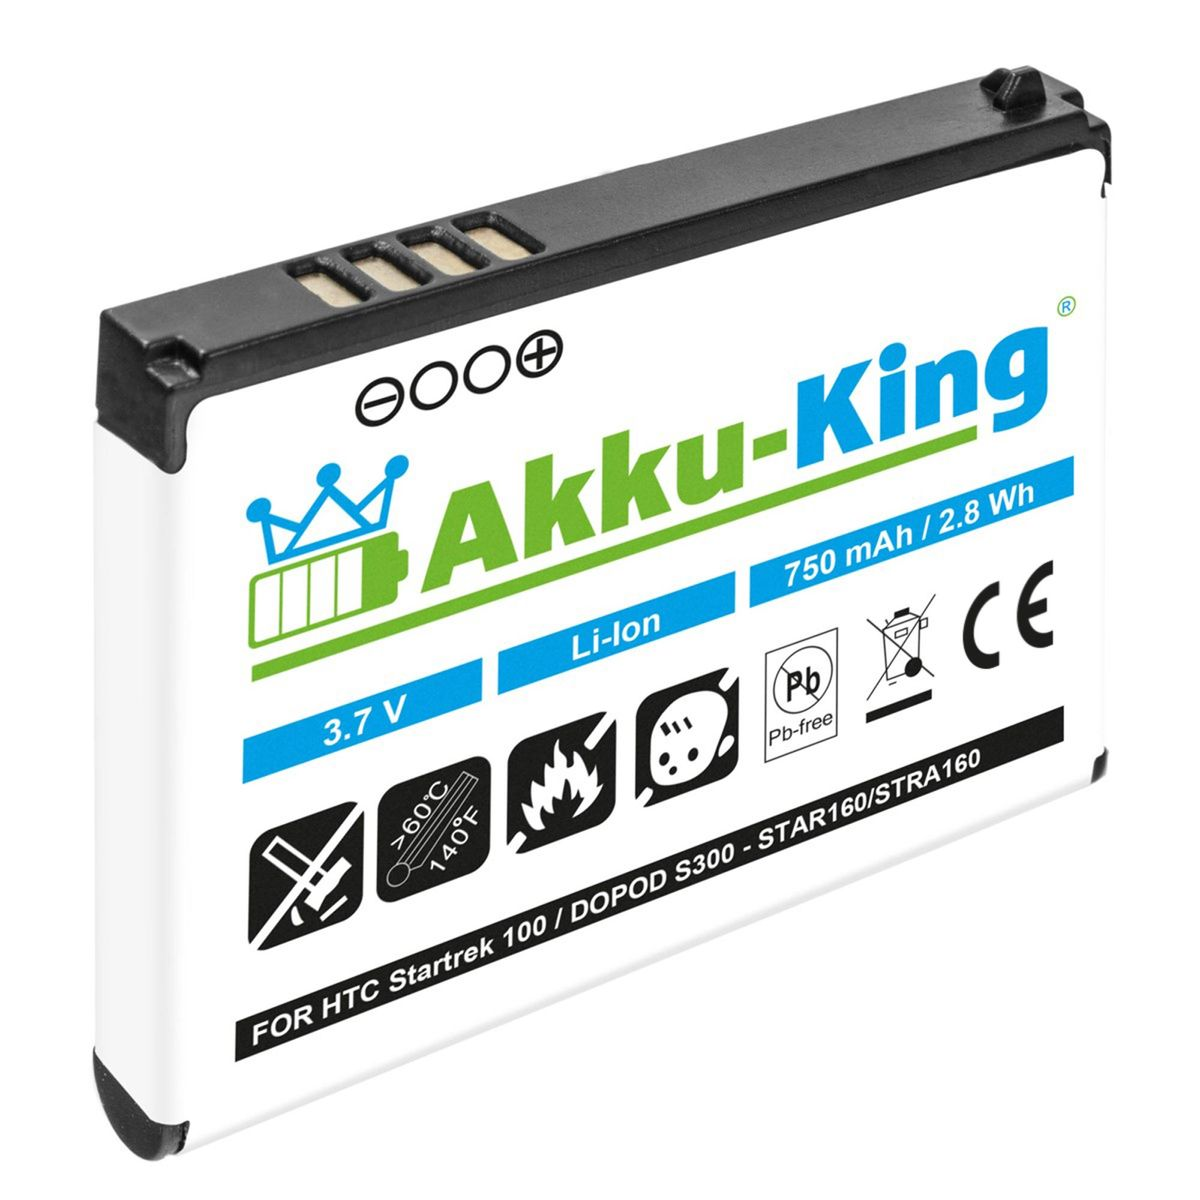 AKKU-KING Akku 3.7 Handy-Akku, mit 750mAh HTC STAR160 Volt, Li-Ion kompatibel